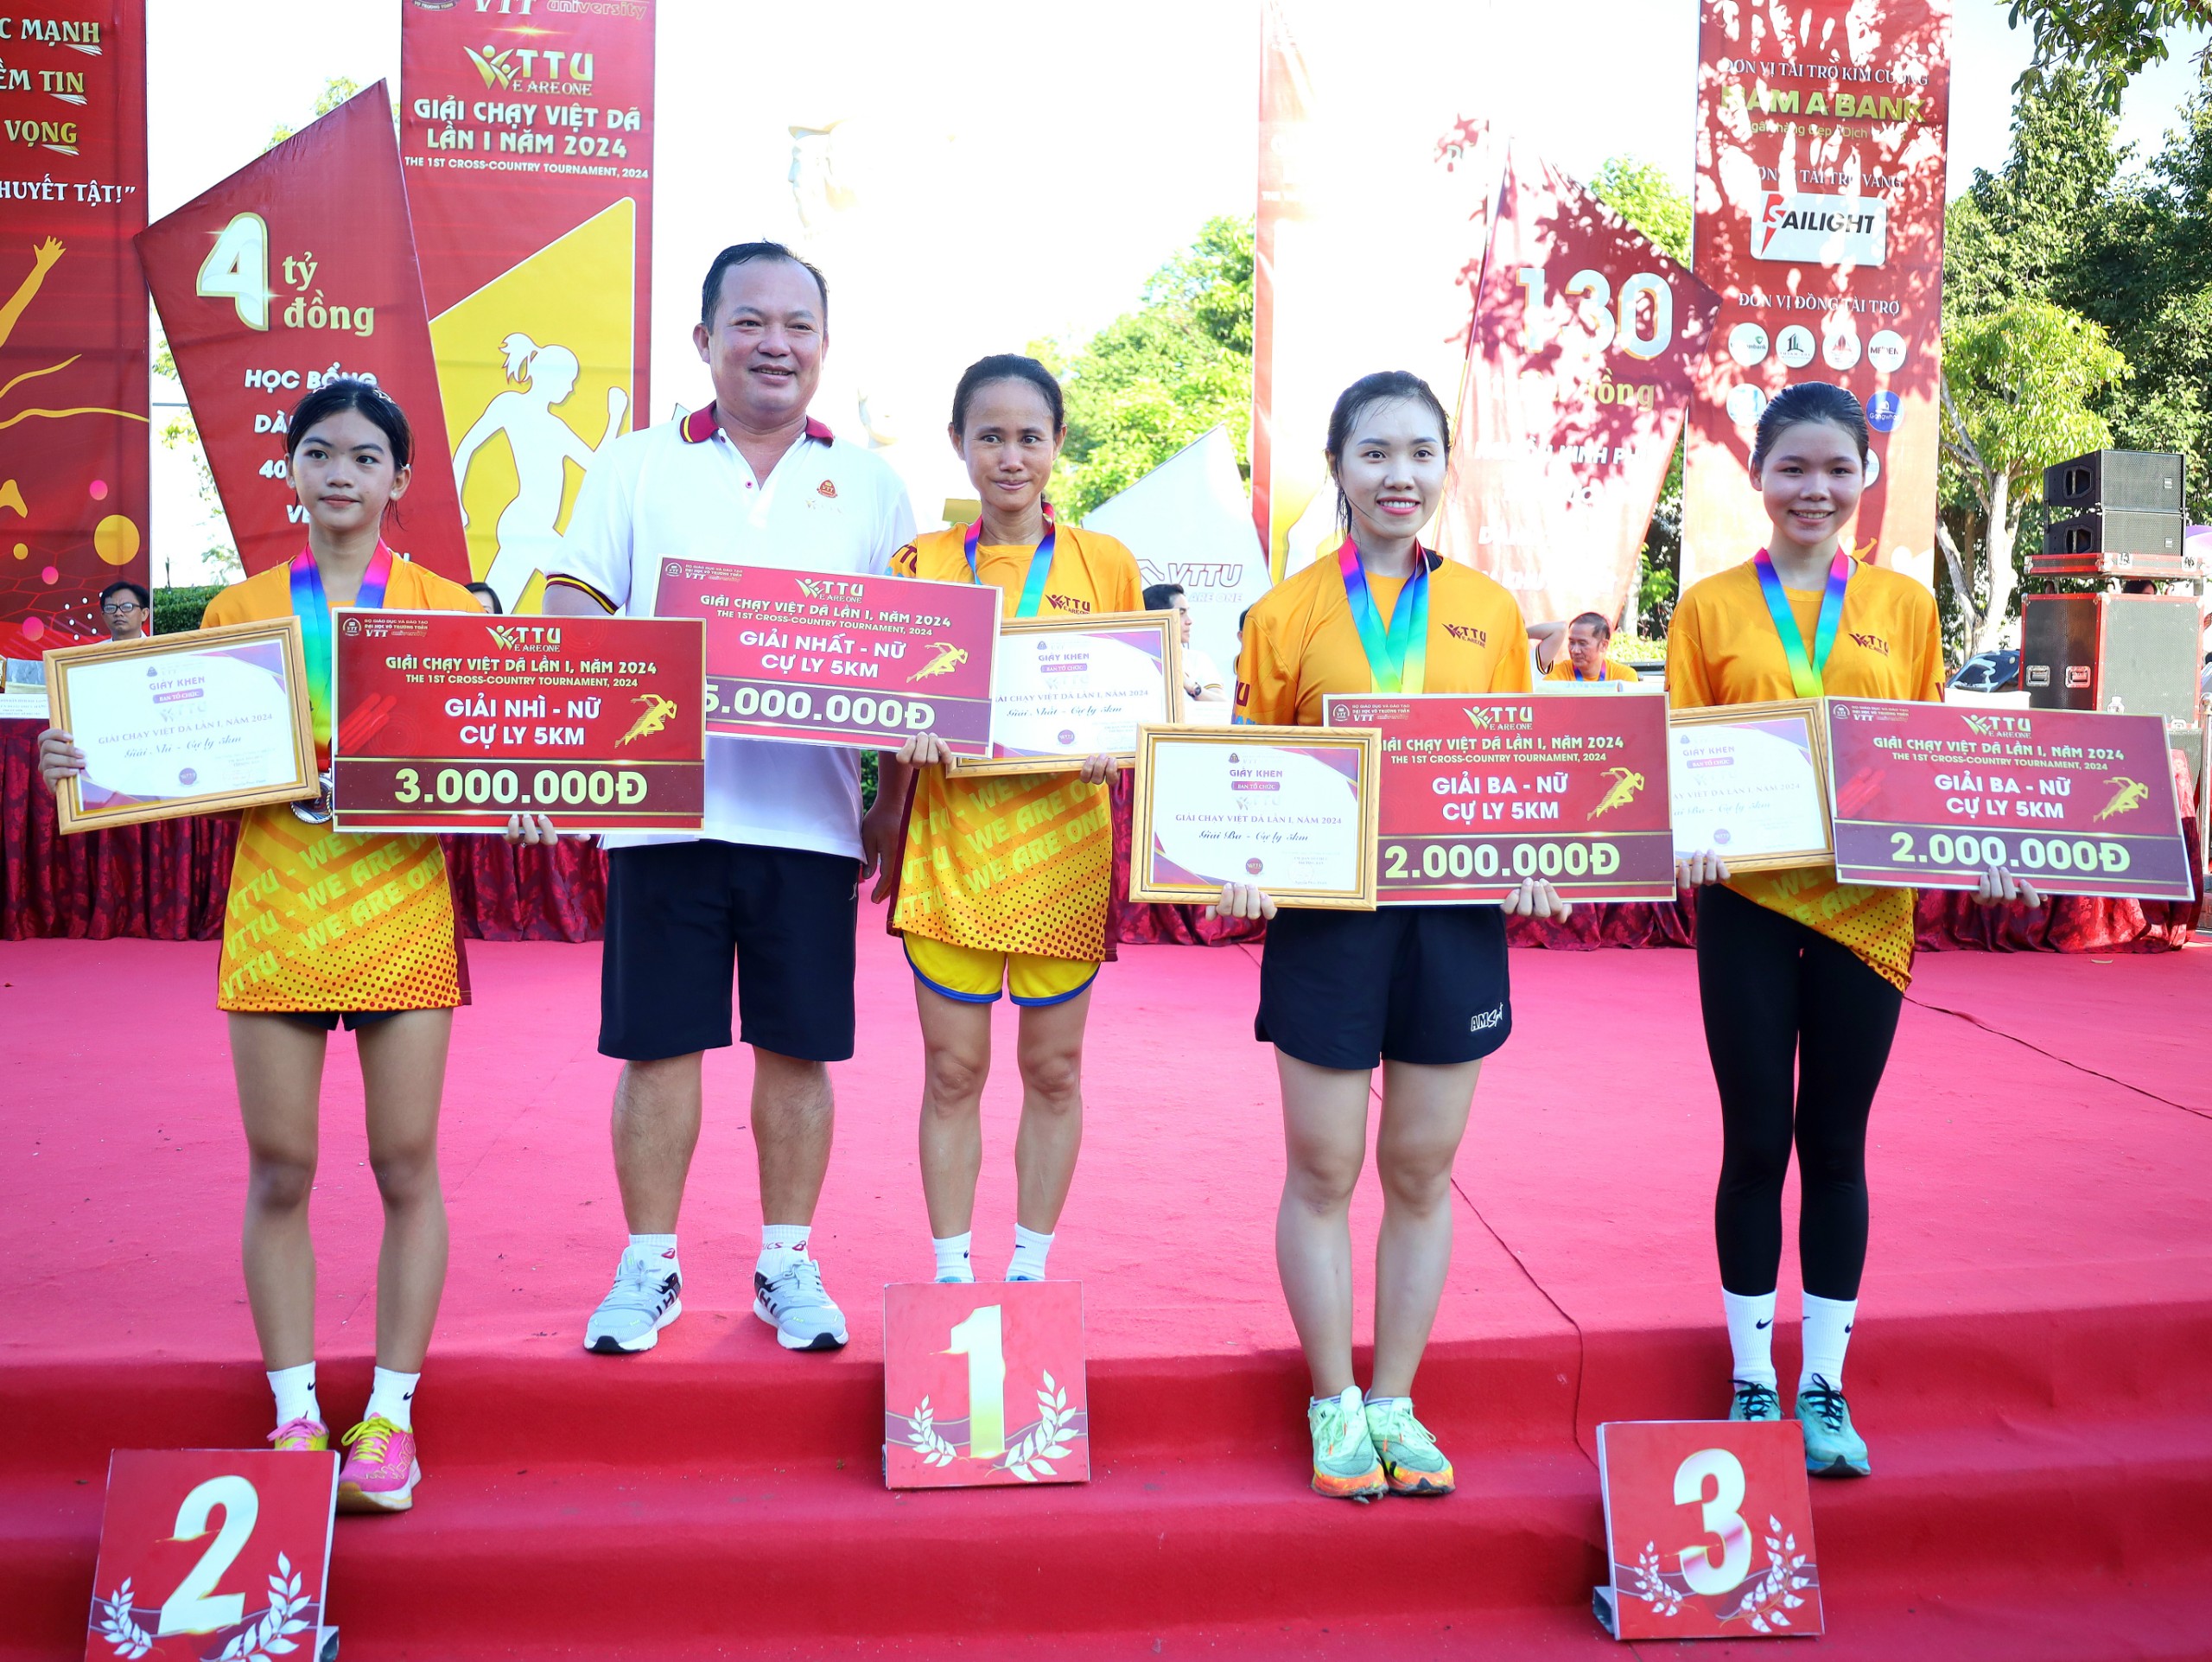 Ông Nguyễn Văn Hoà - Phó Chủ tịch UBND tỉnh Hậu Giang trao giải cho các vận động viên nữ đạt giải cao cự ly 5km.